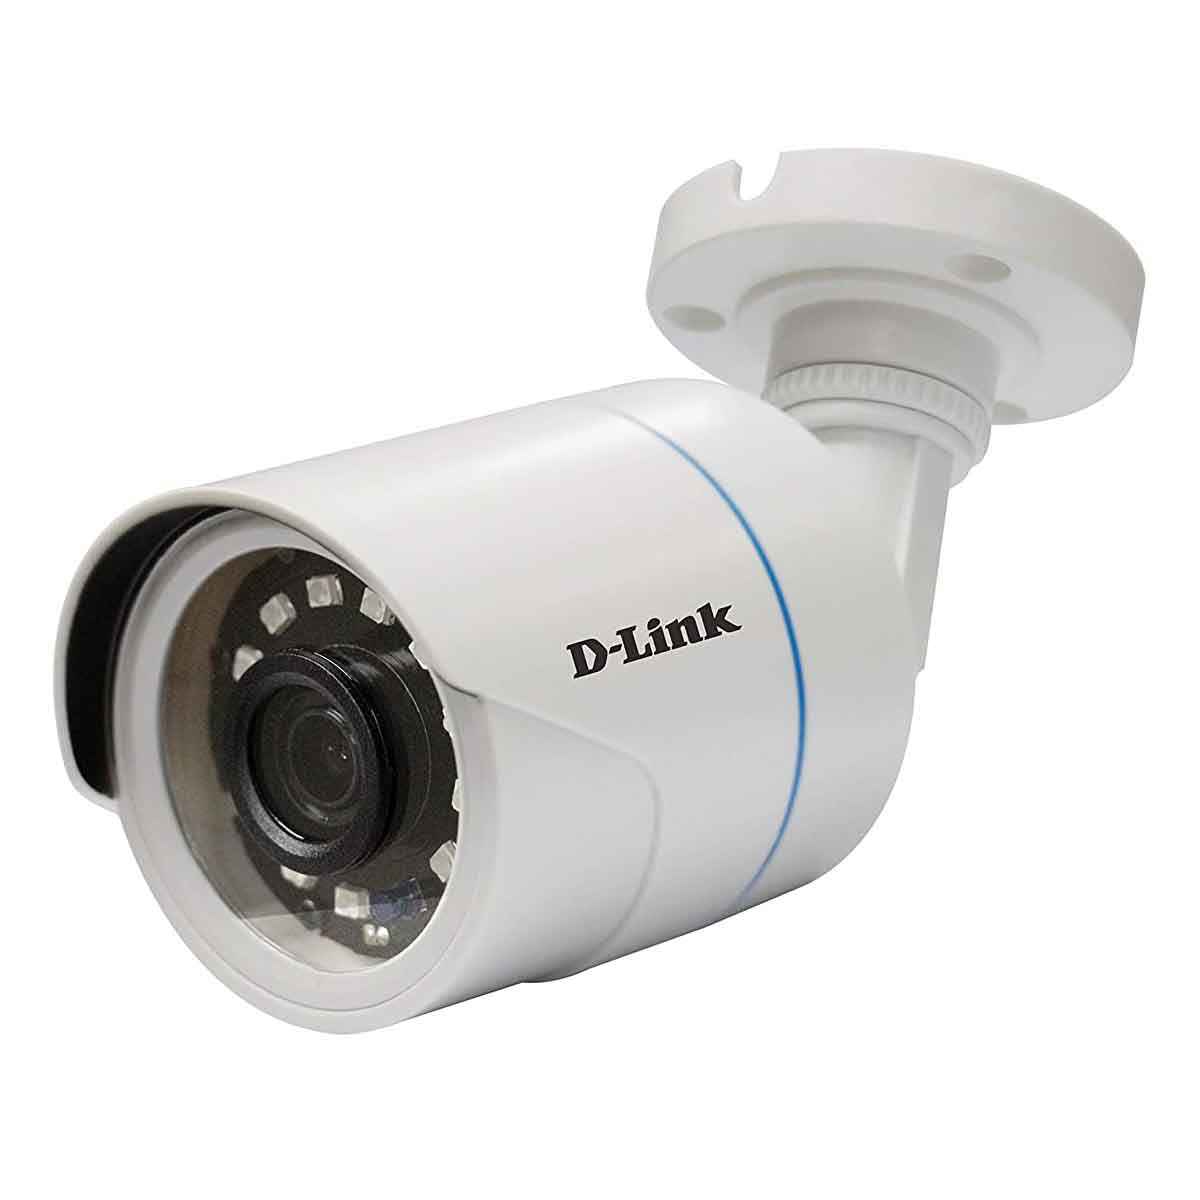 D-Link 5 MP 20 mtr IR Range Bullet Camera